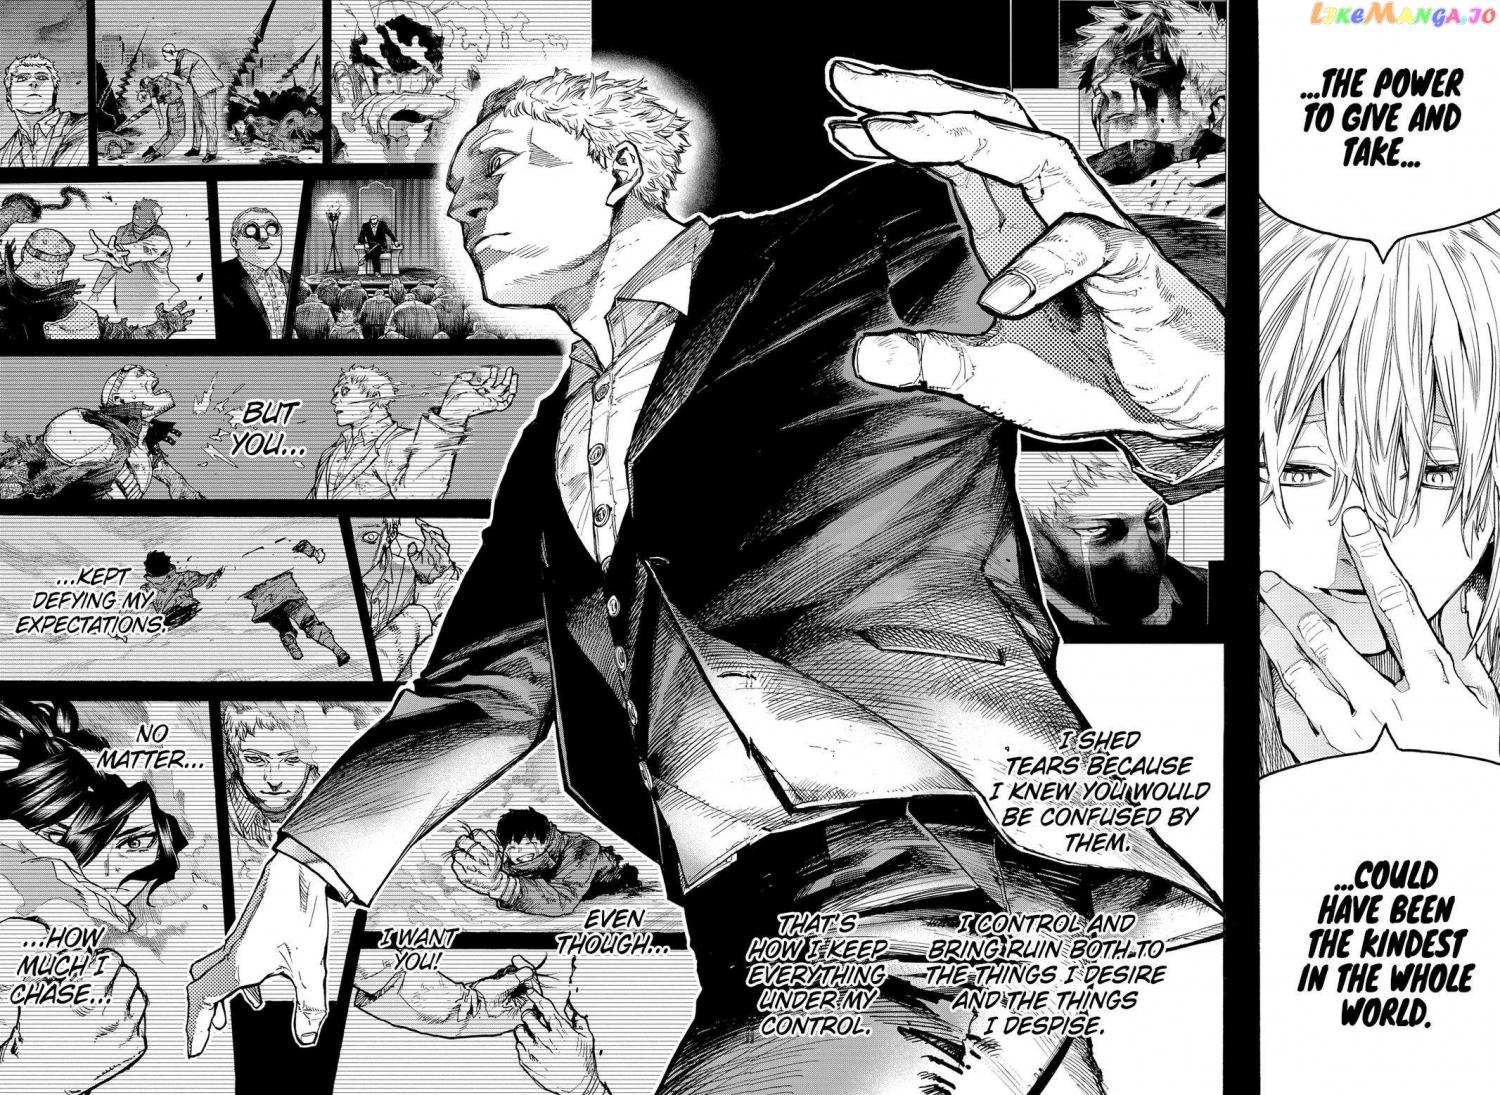 Boku no Hero Academia Ch.408 Page 12 - Mangago